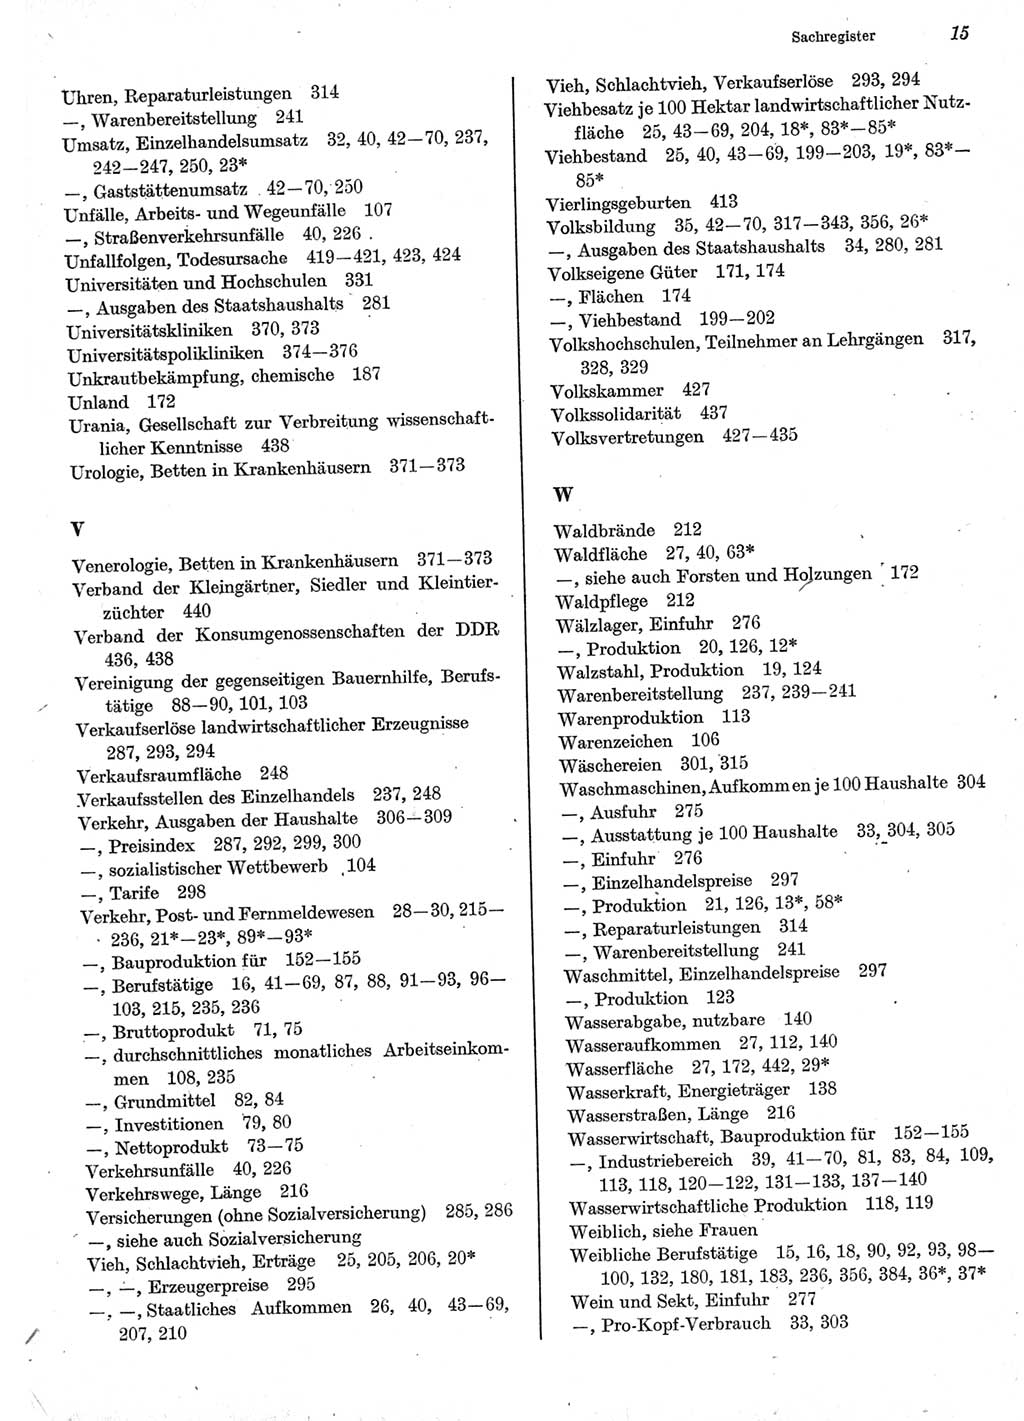 Statistisches Jahrbuch der Deutschen Demokratischen Republik (DDR) 1977, Seite 15 (Stat. Jb. DDR 1977, S. 15)